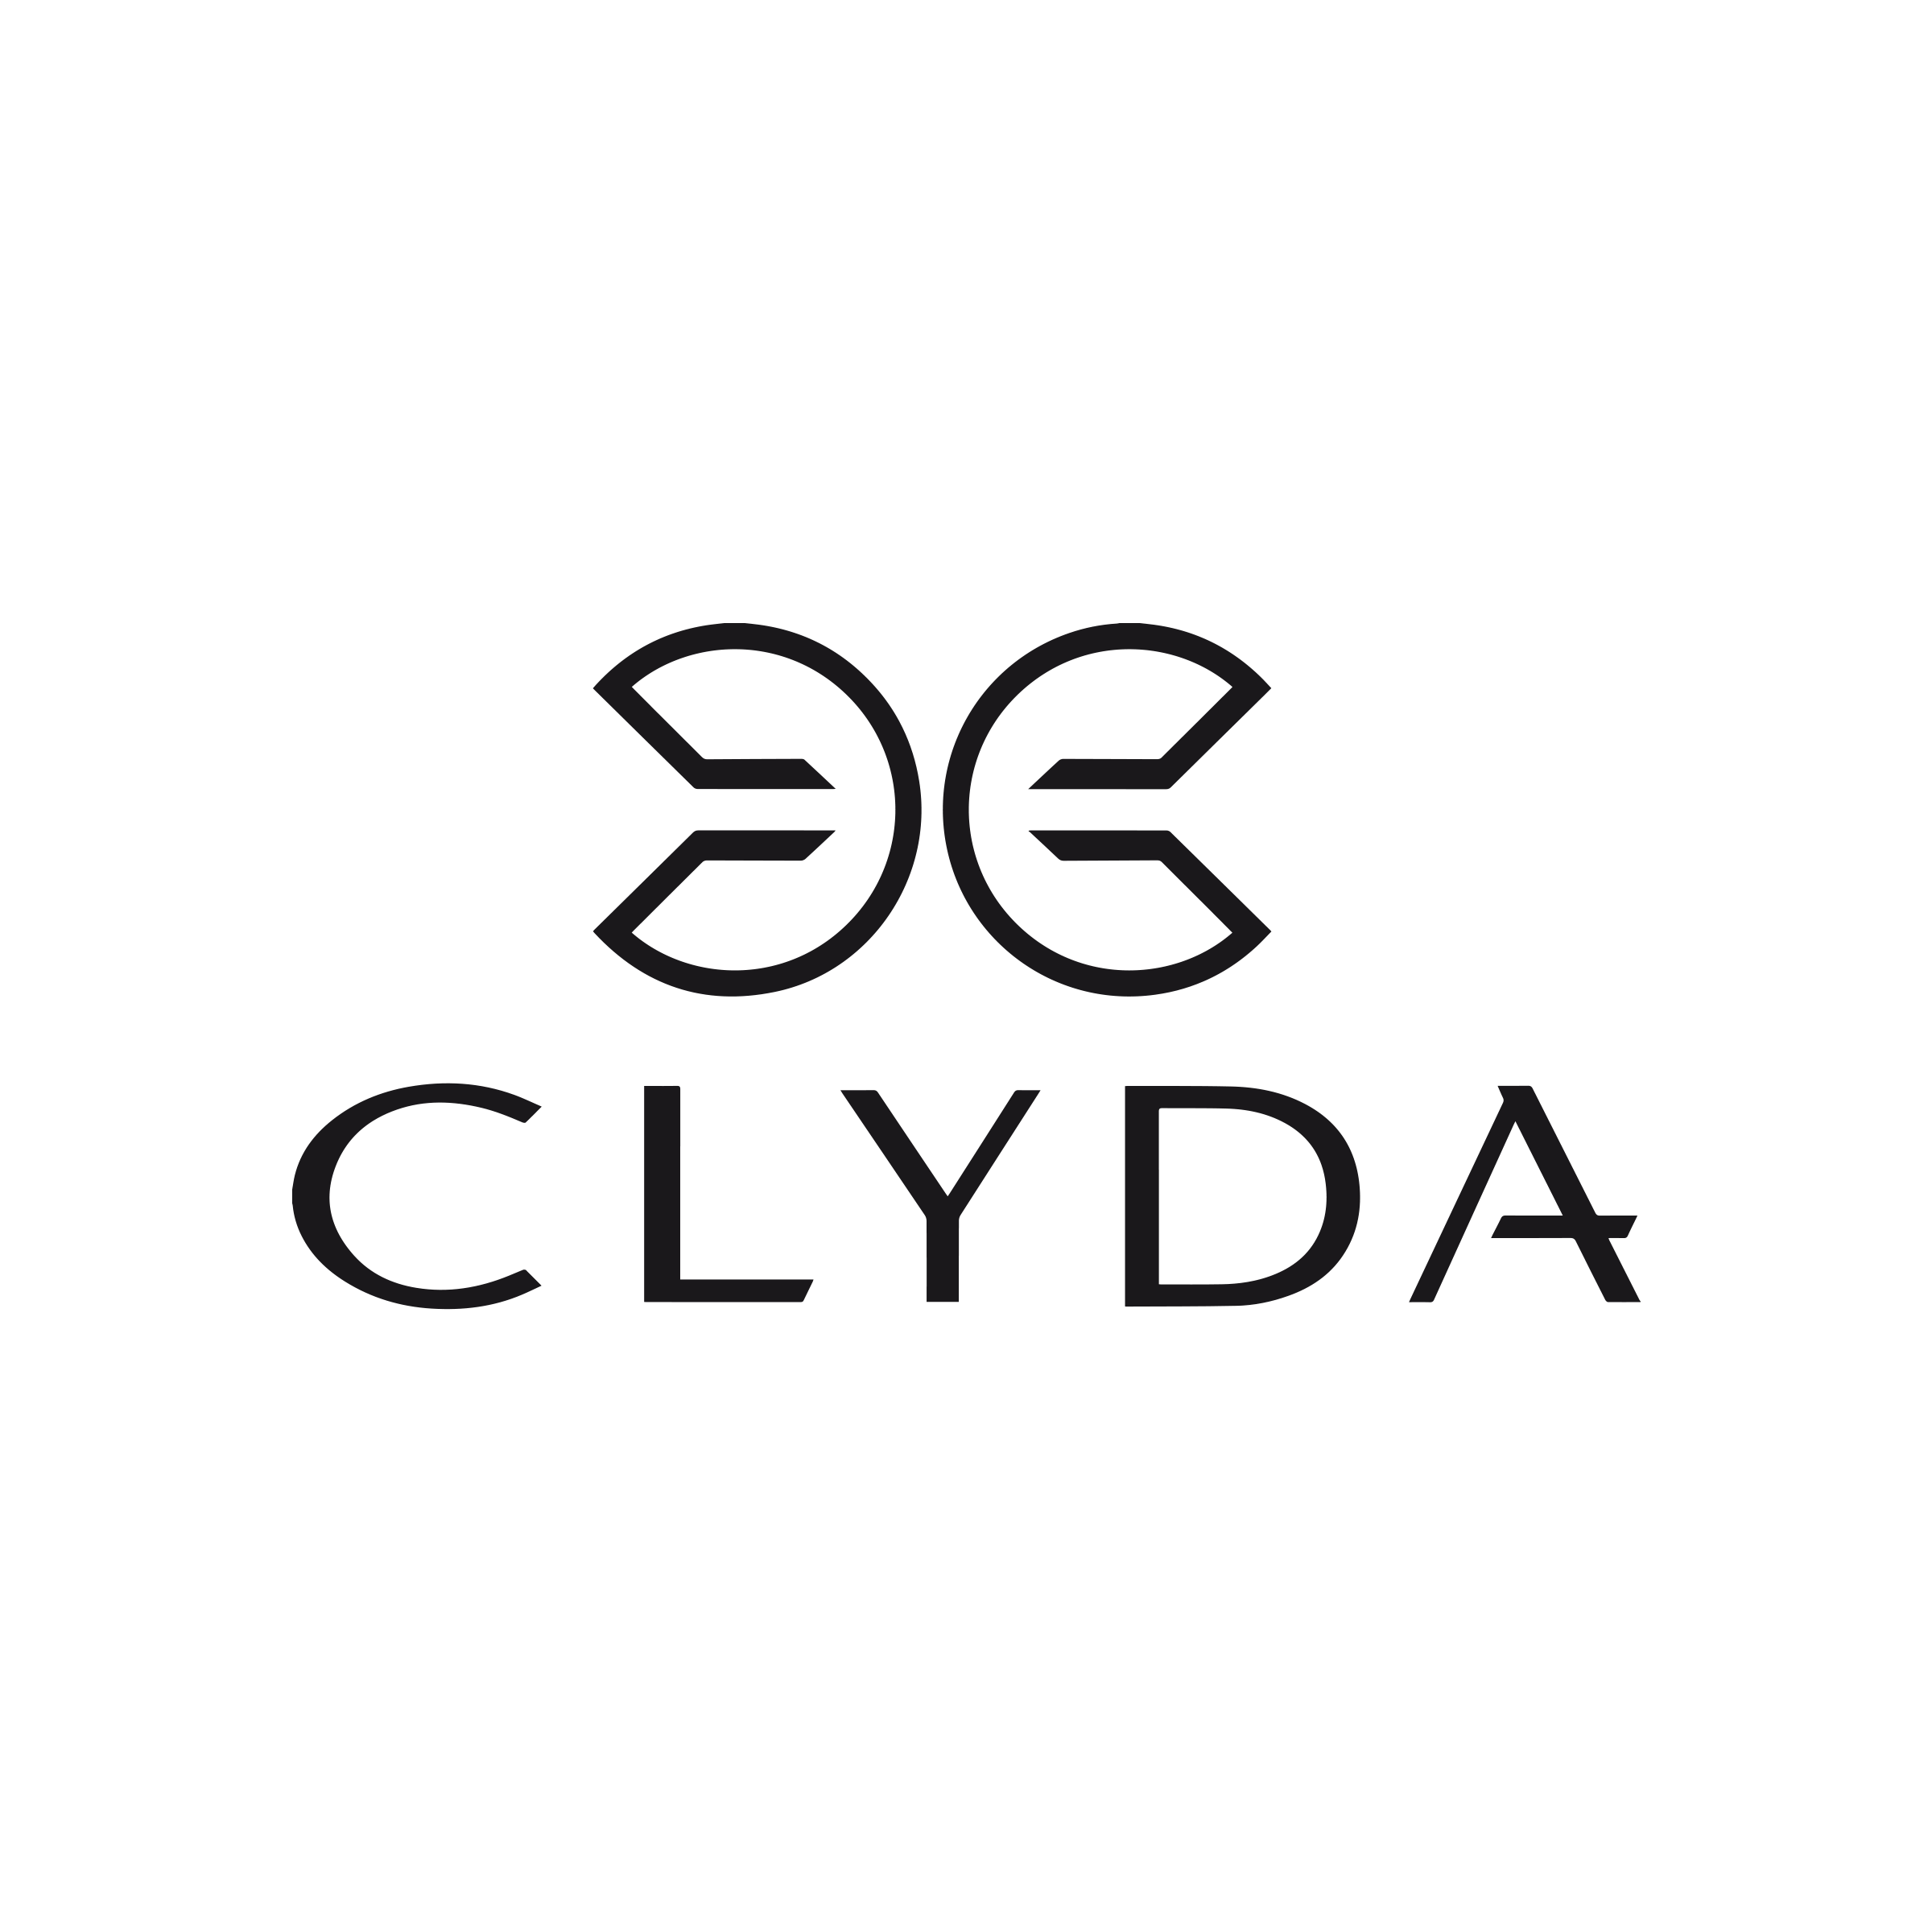 CLYDA logo